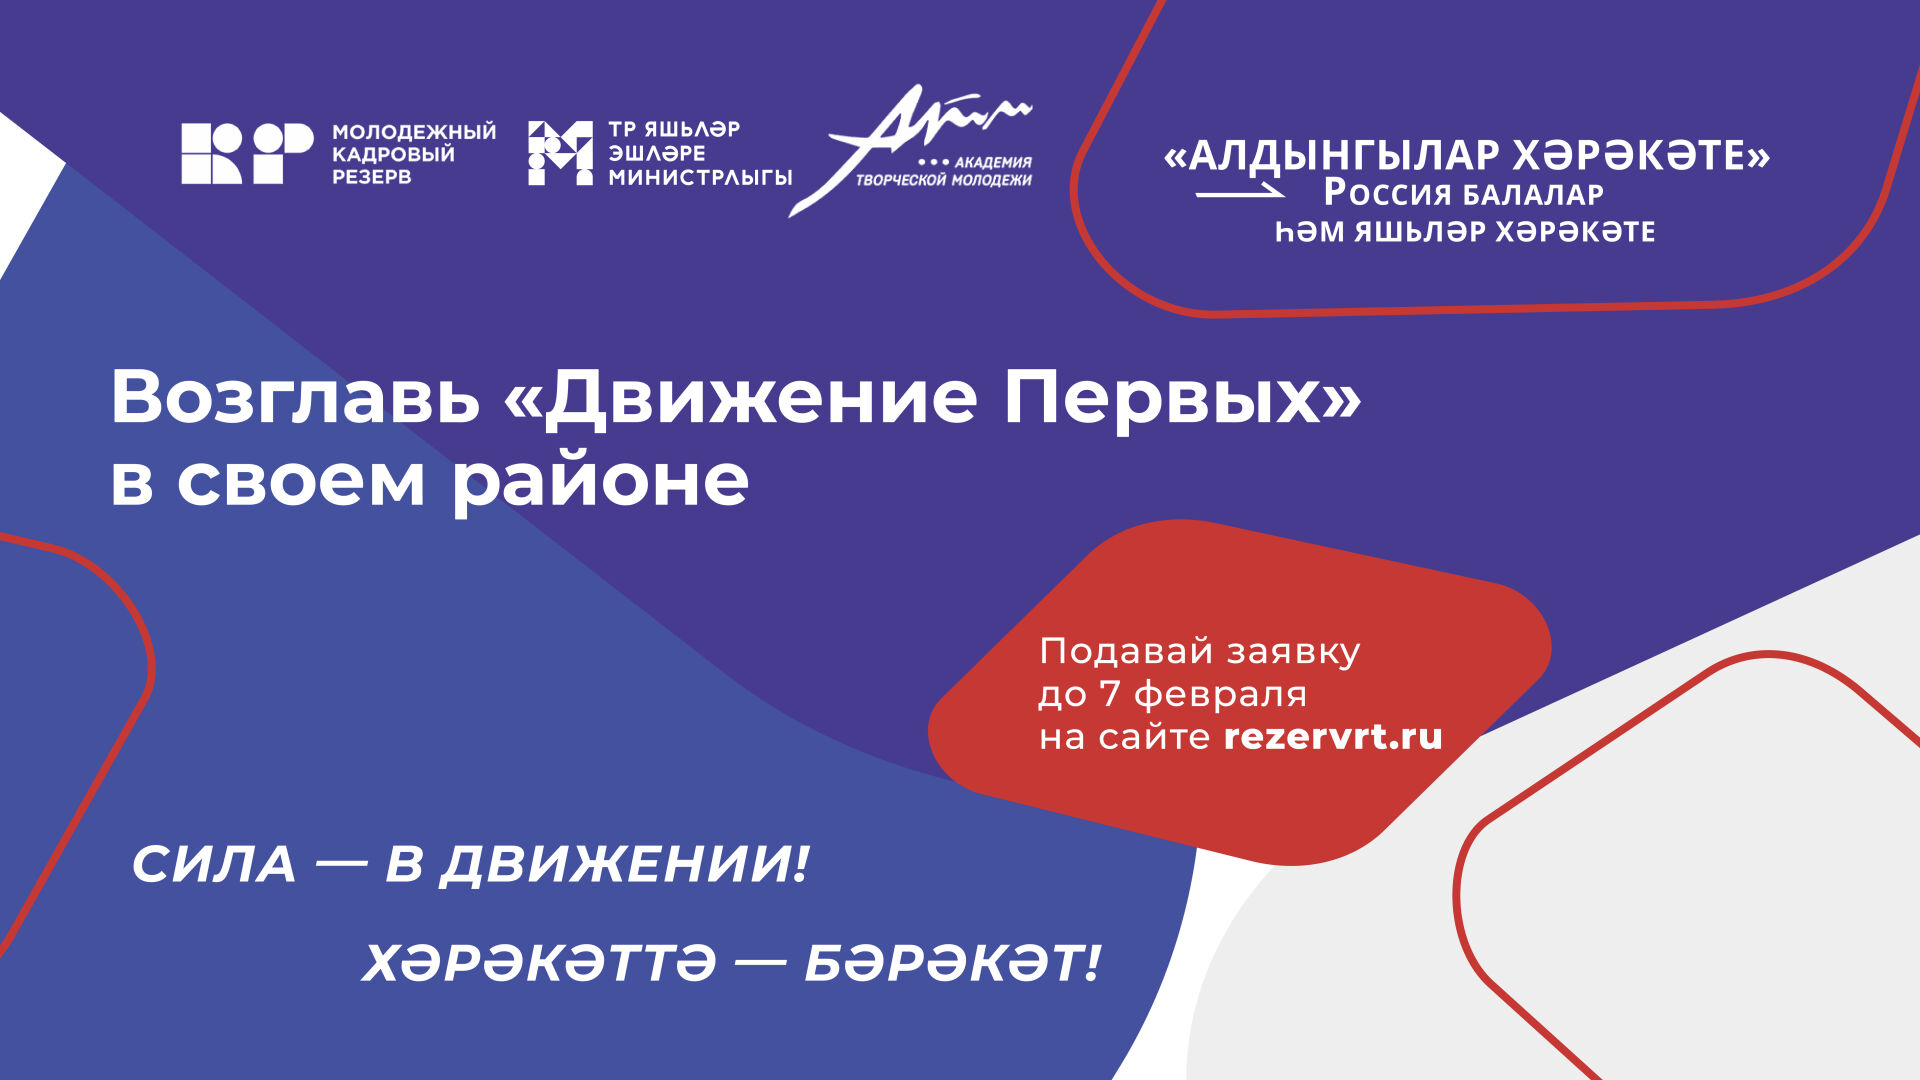 В Татарстане стартовал конкурс на должность руководителя «Движение Первых» в каждом районе